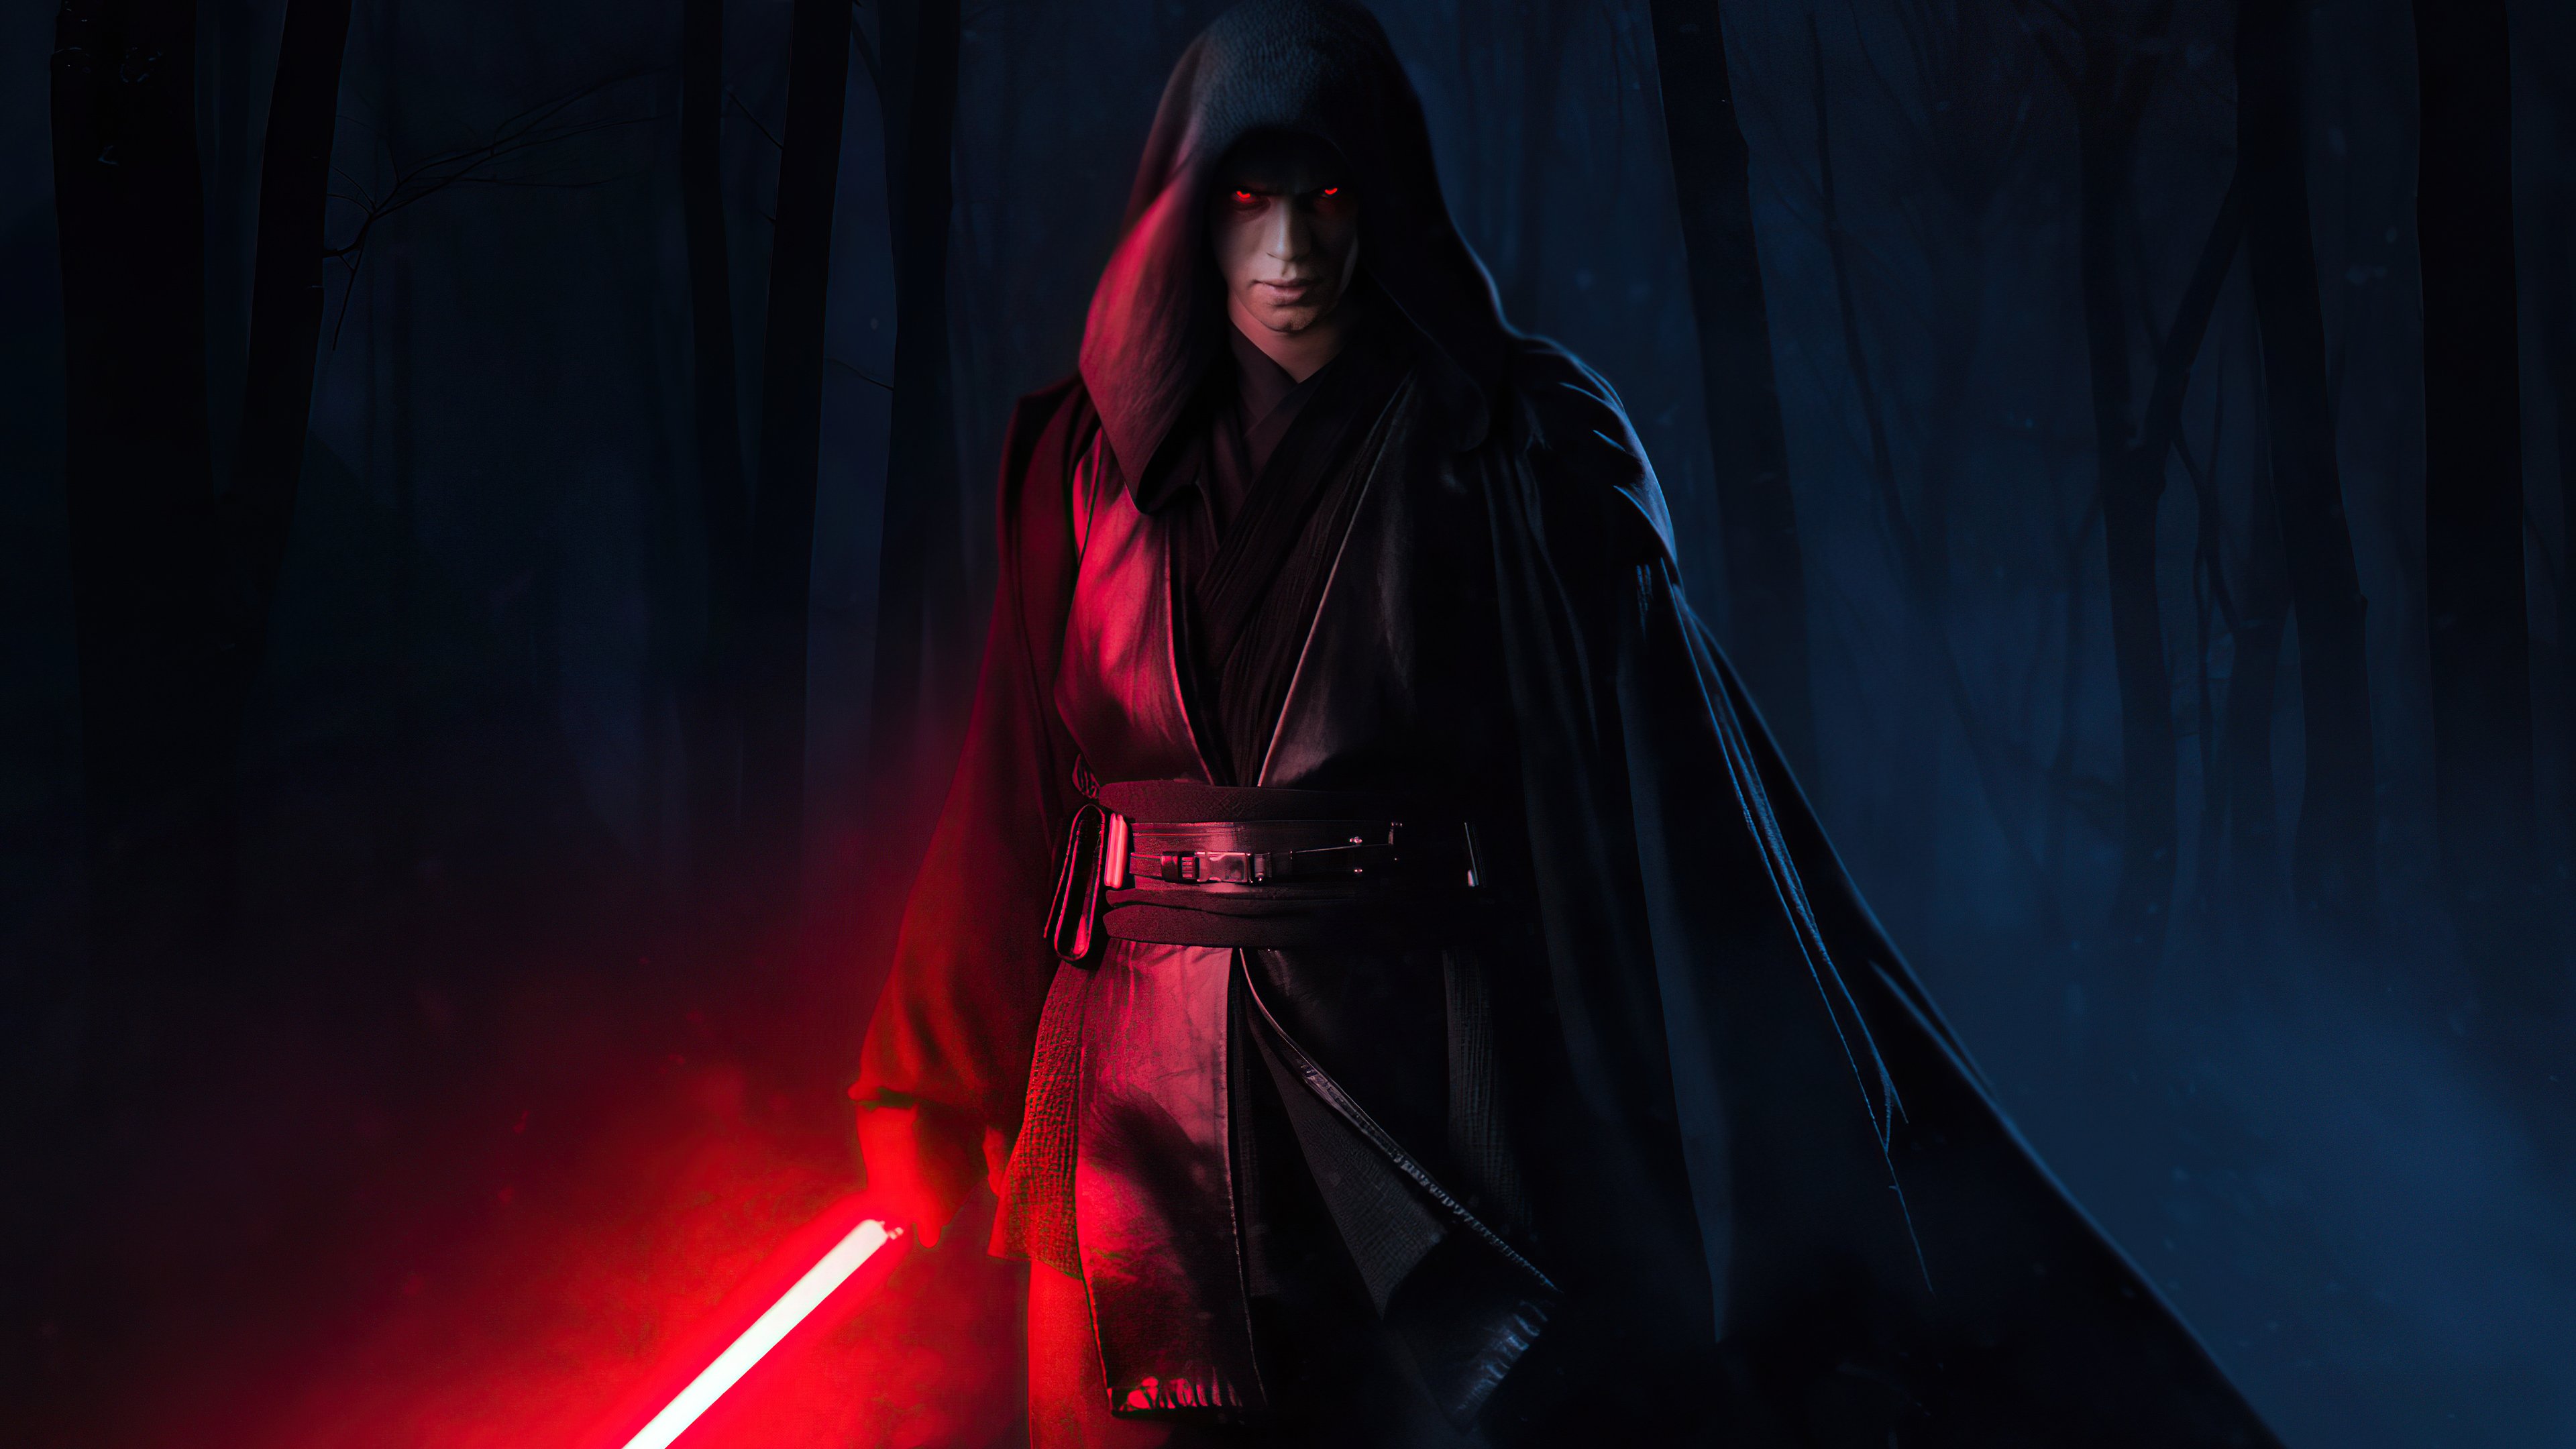 Fondos de pantalla Hayden Christensen como Anakin Skywalker